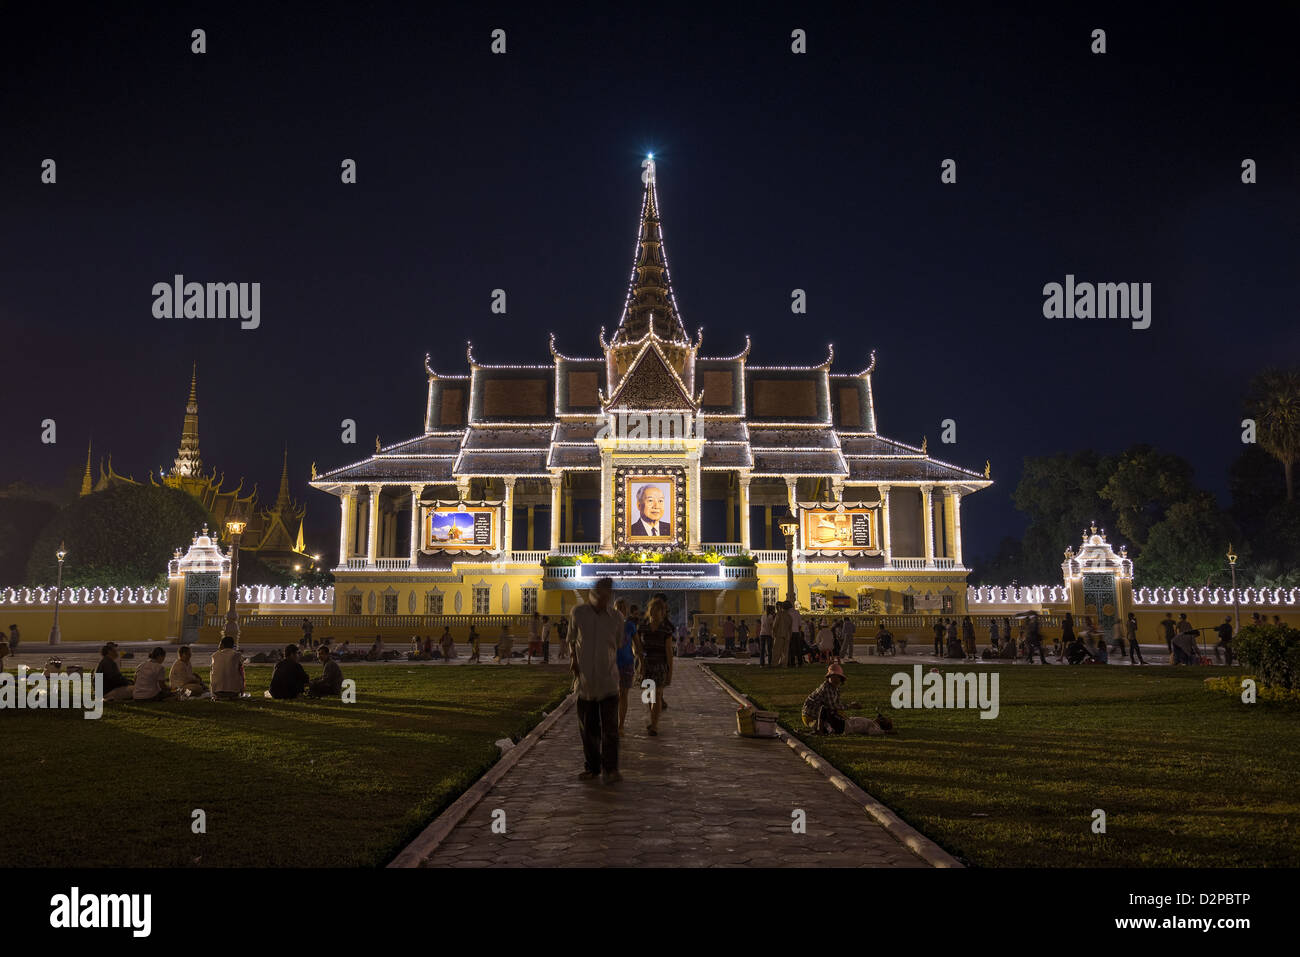 Il palazzo reale di phnom penh cambogia illuminato in onore del defunto re Norodom Sihanouk Foto Stock